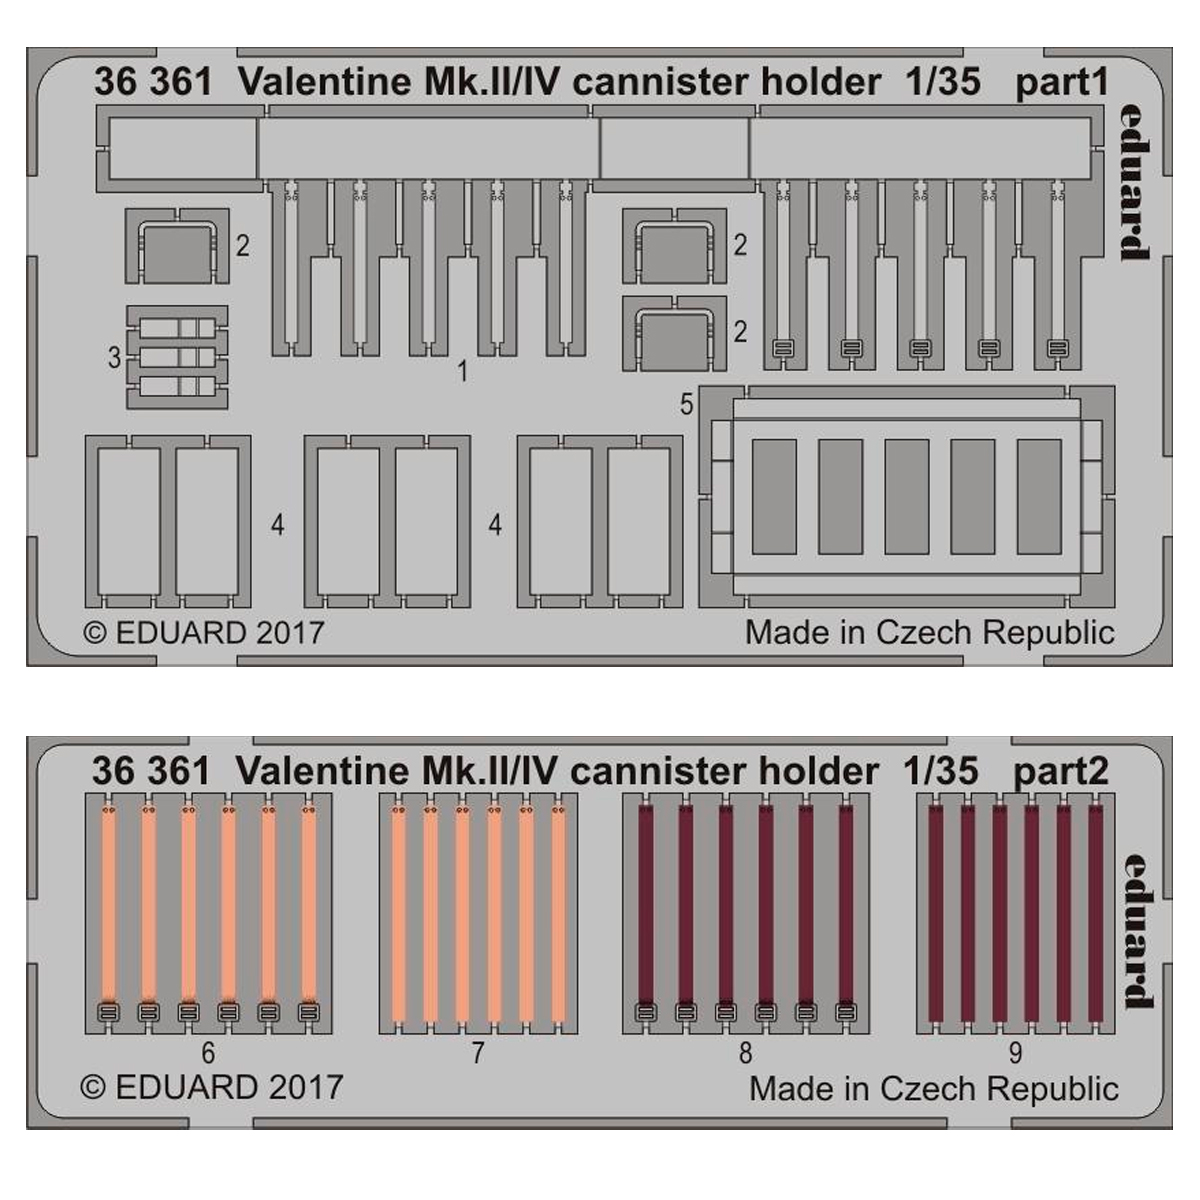 Valentine Mk.II/IV cannister holder 1/35